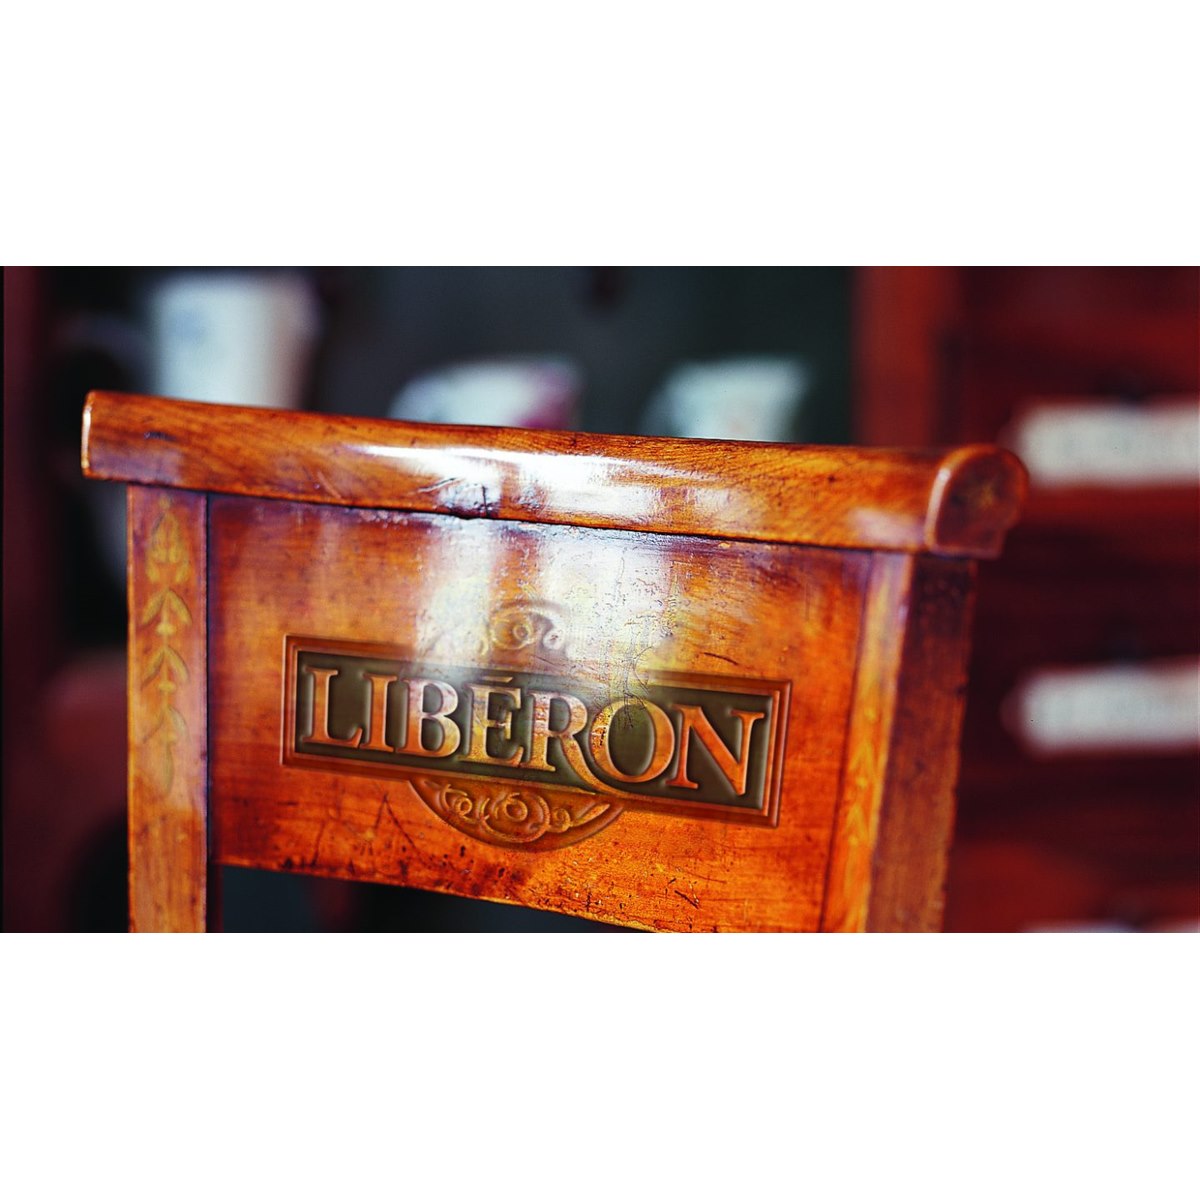 Where to buy Liberon Teak Oil